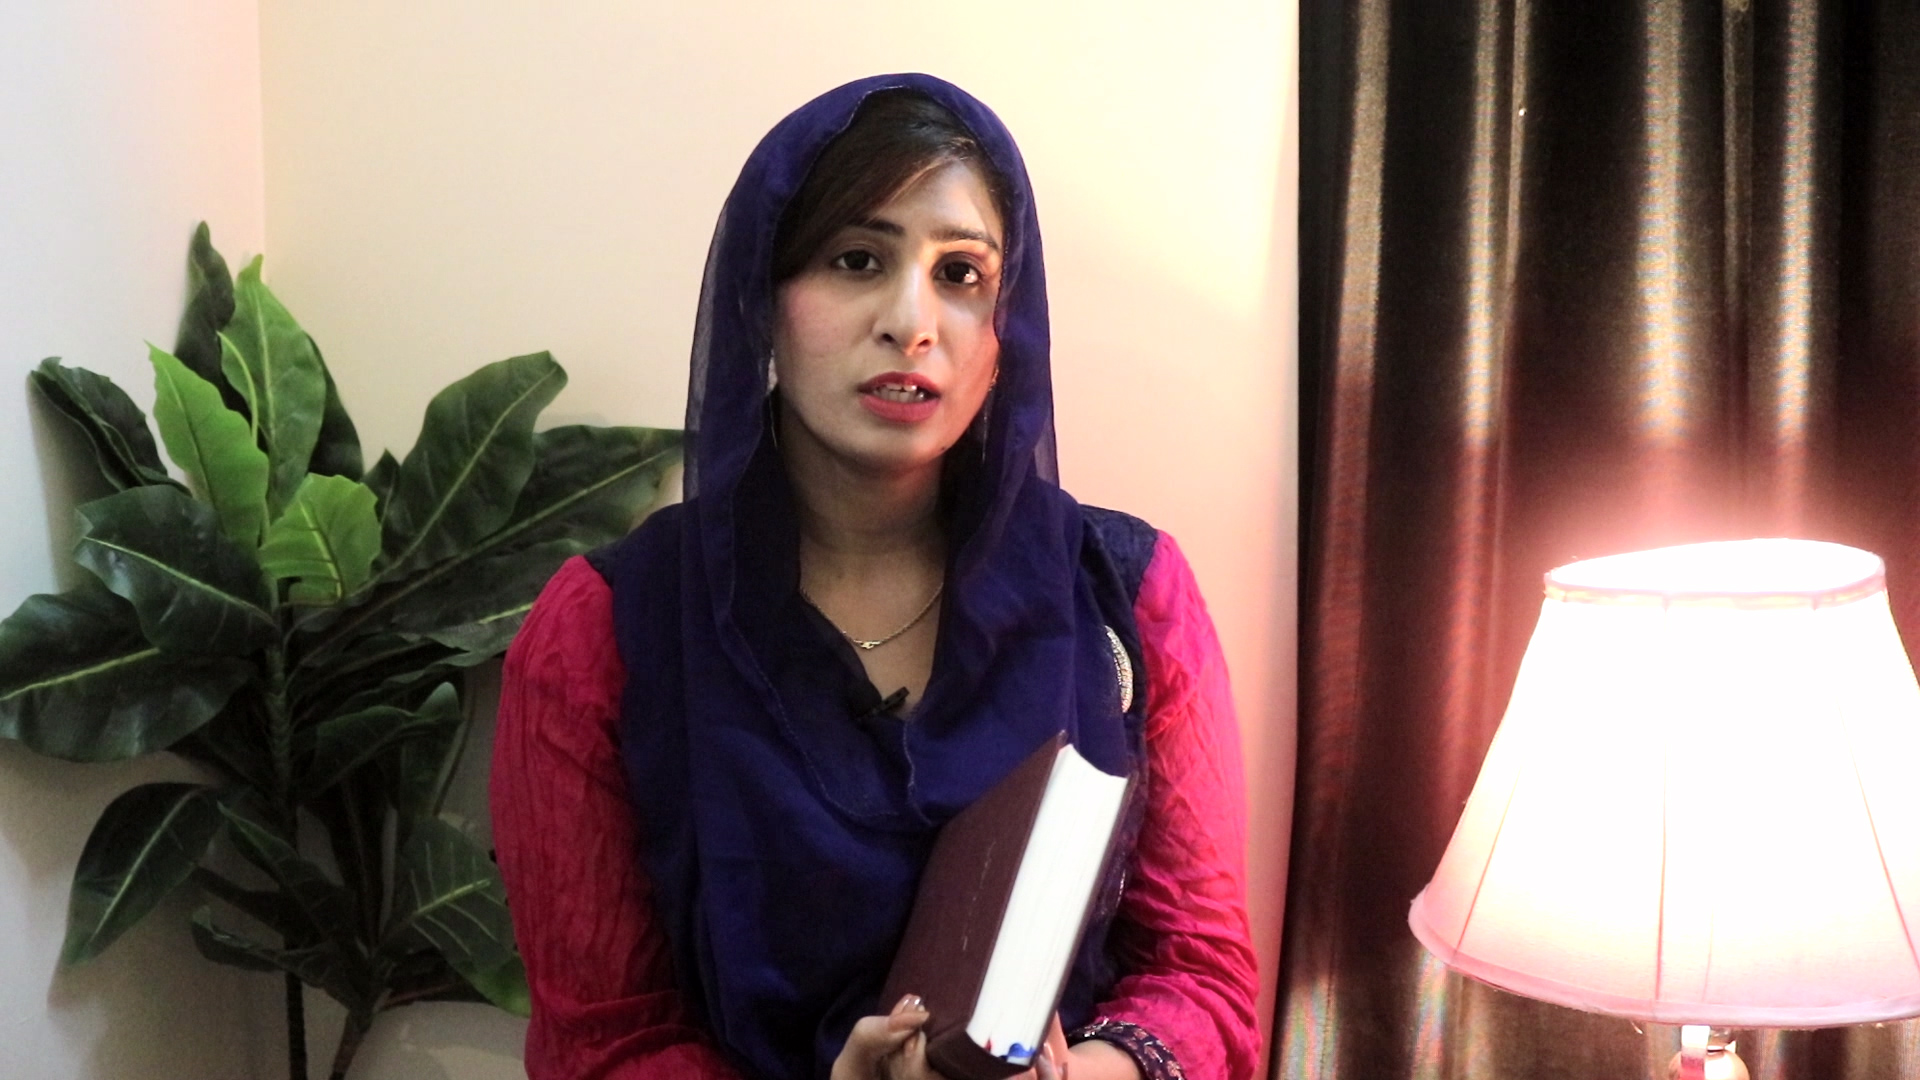 You Shall Not Swear - Zara Qandeel - Urdu Christian Messages - Urdu Sermons